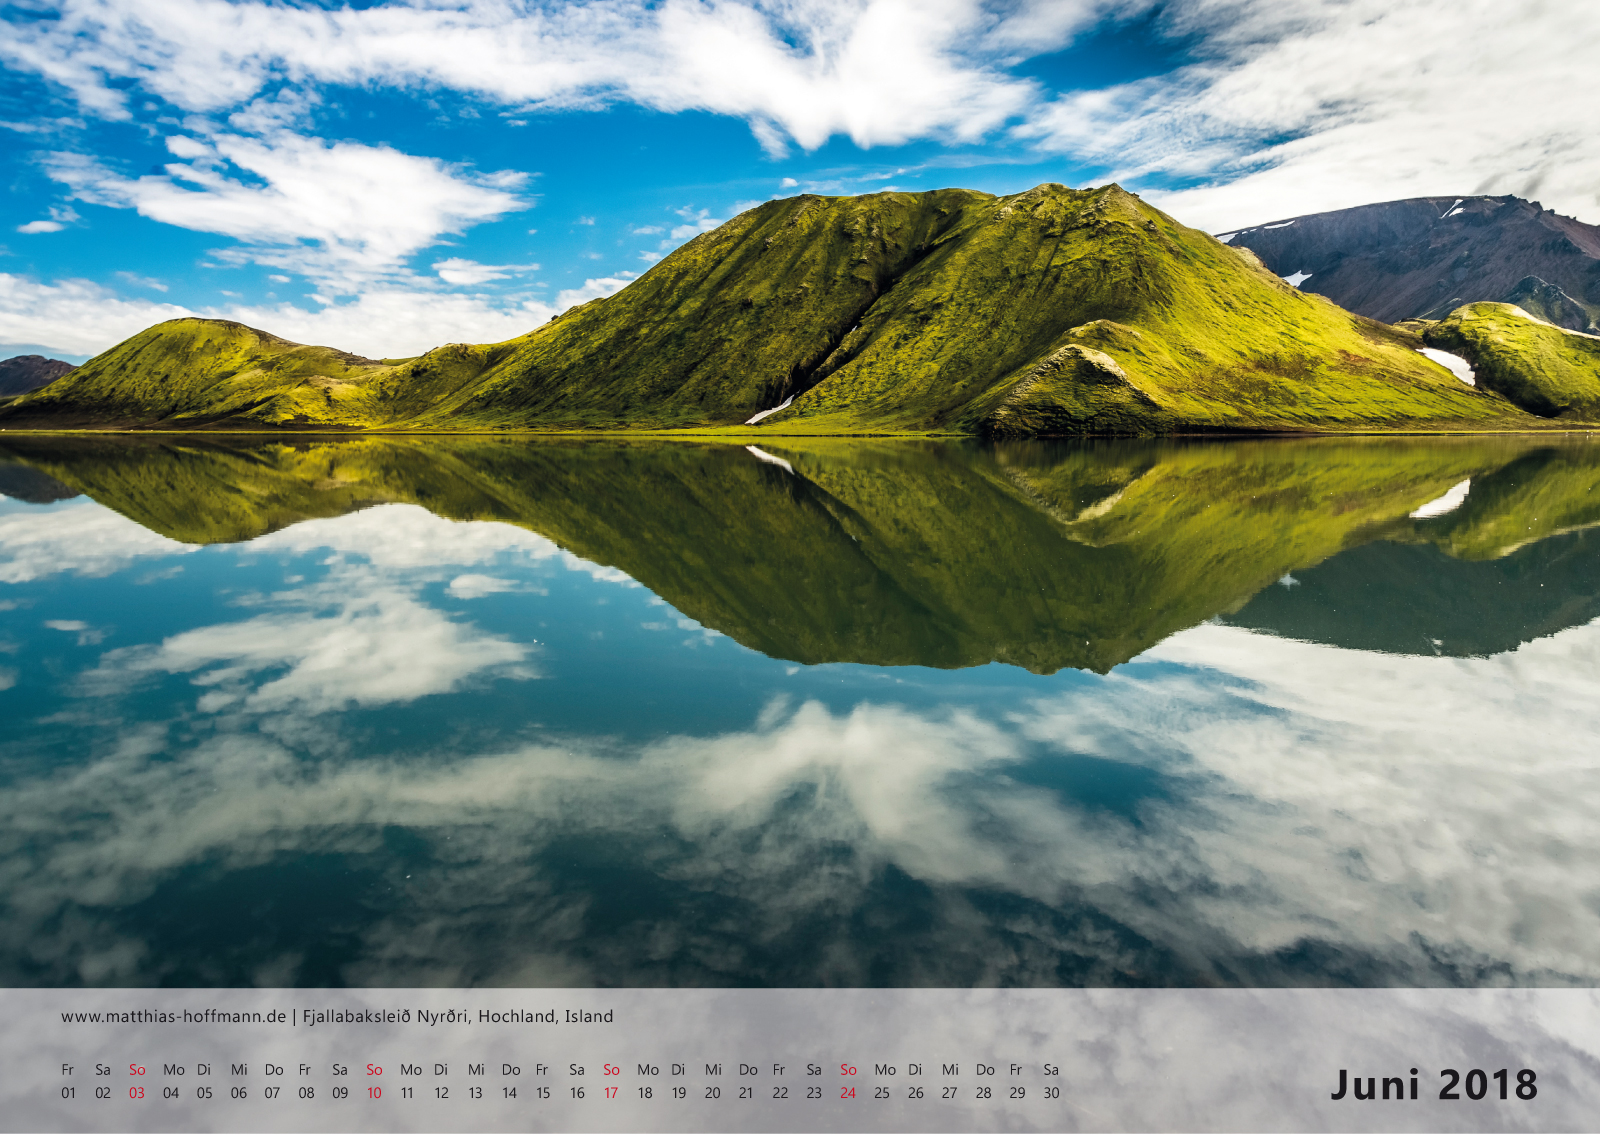 Fjallabaksleið Nyrðri, Hochland, Island | Kalender 2018 - Juni